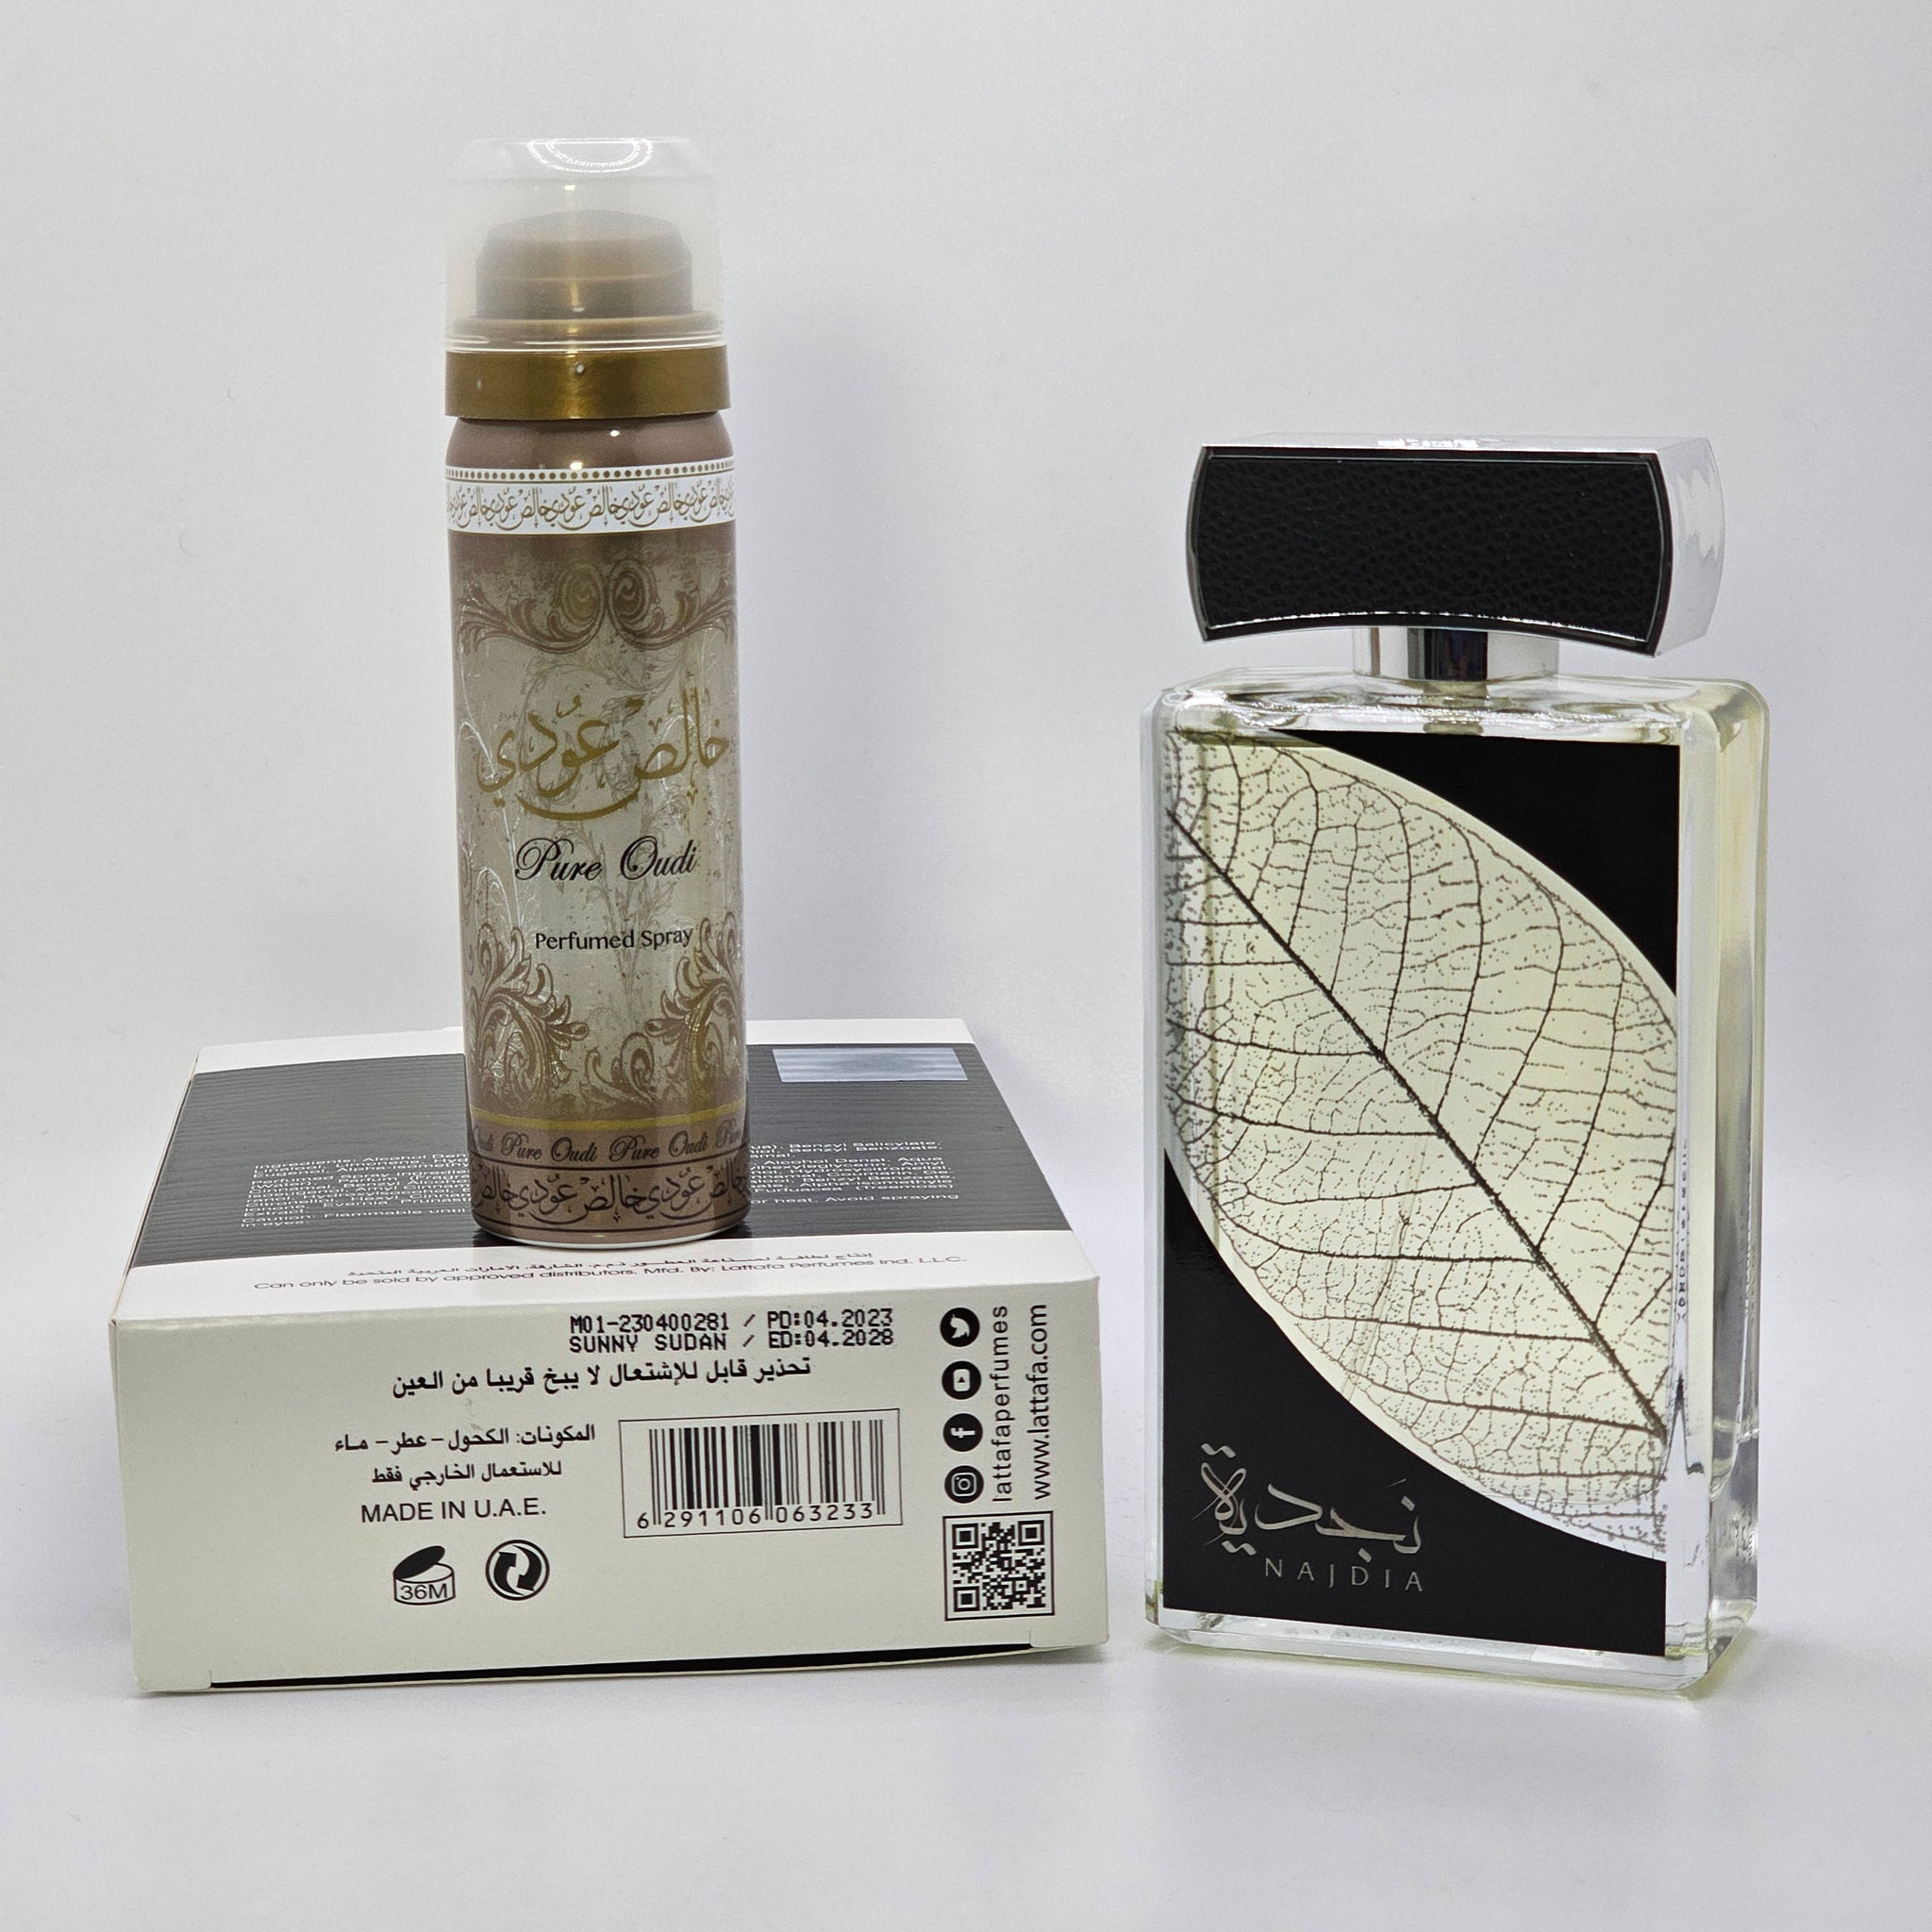 Najdia By Lattafa Gift Set For Women And Men Eau De Parfum 3.4 Oz -  Redbagstores